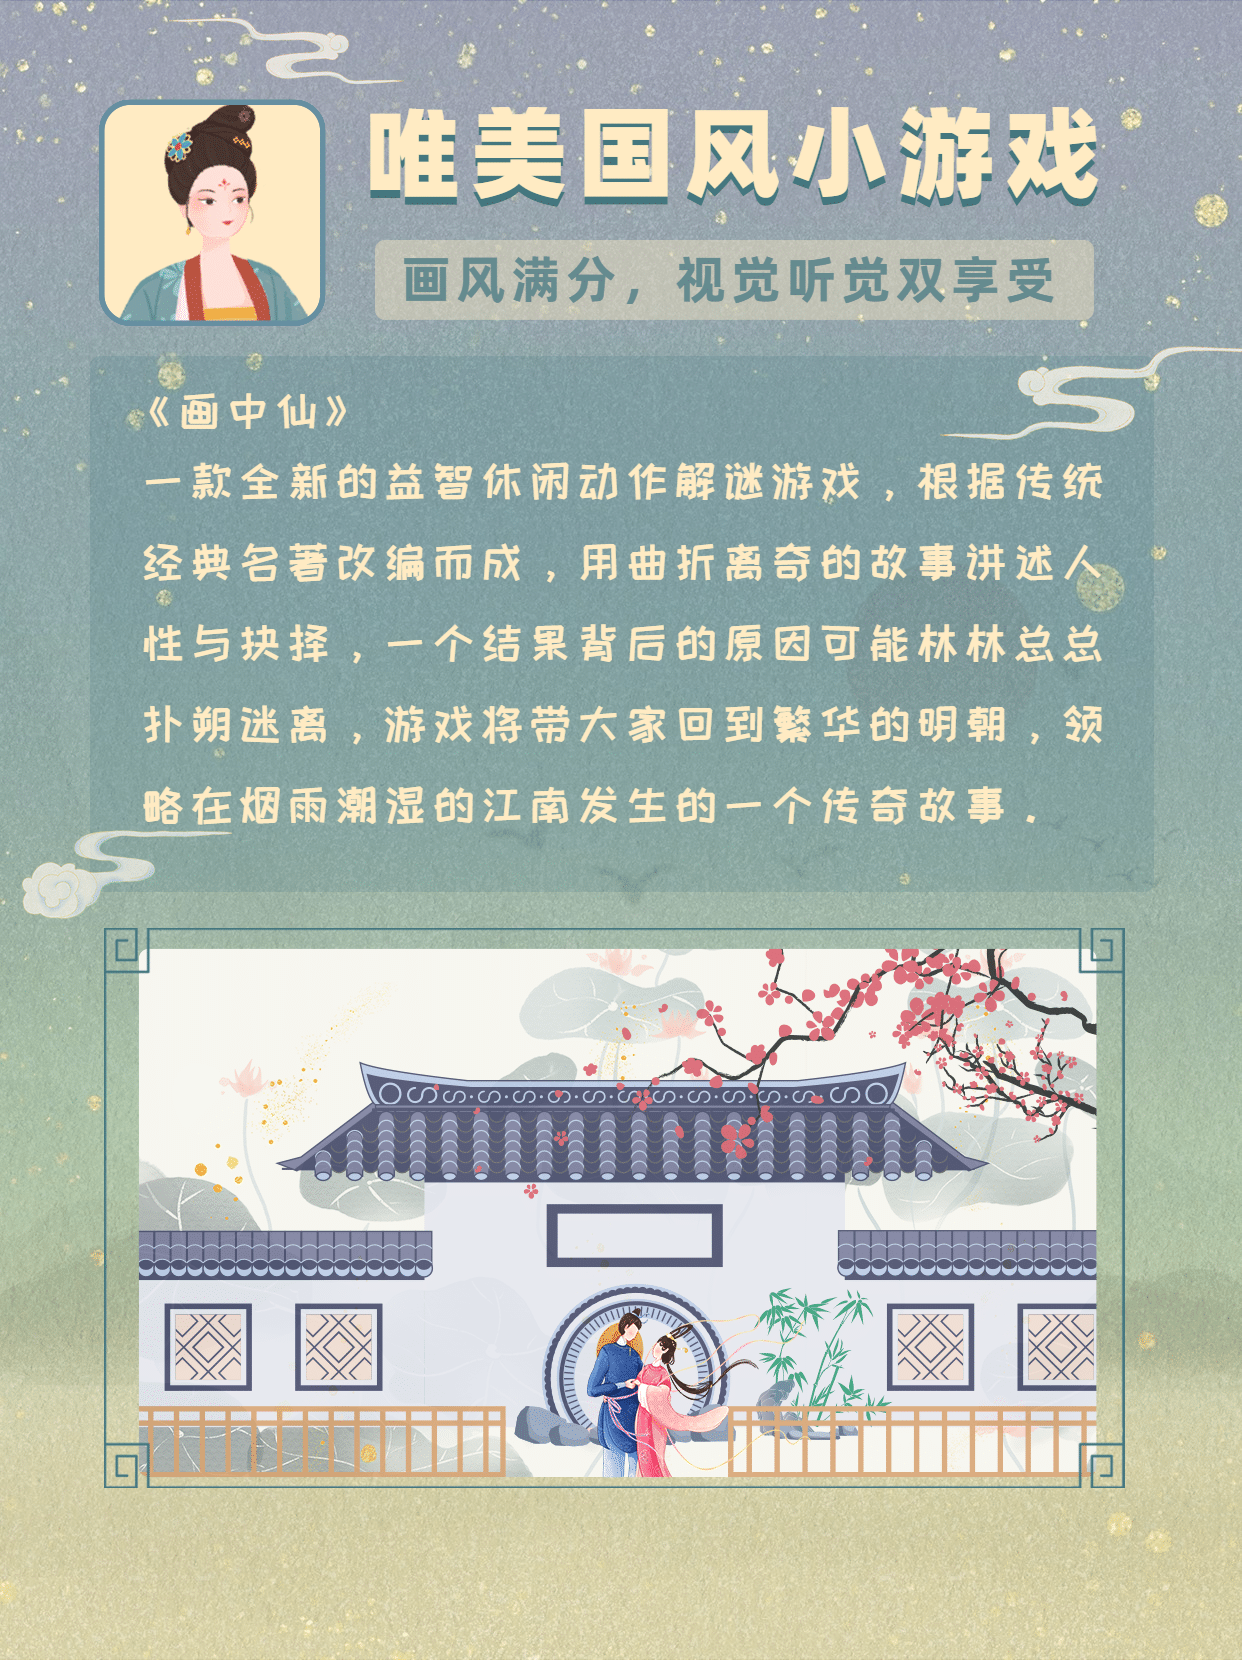 国庆节假期古风游戏小红书封面配图预览效果